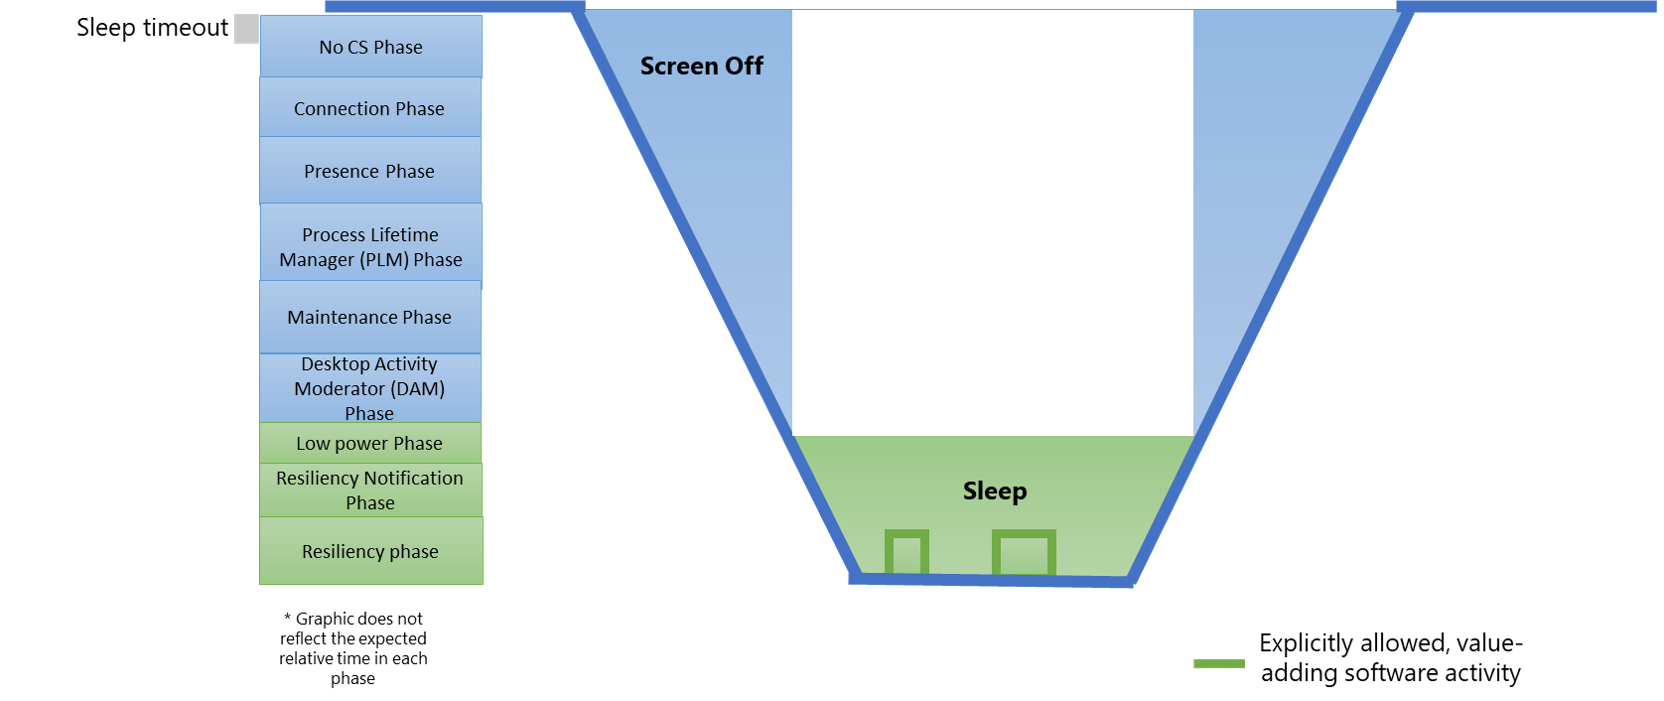 図 1: 最新のスタンバイ システムの状態とソフトウェア フェーズとの関係を示す図